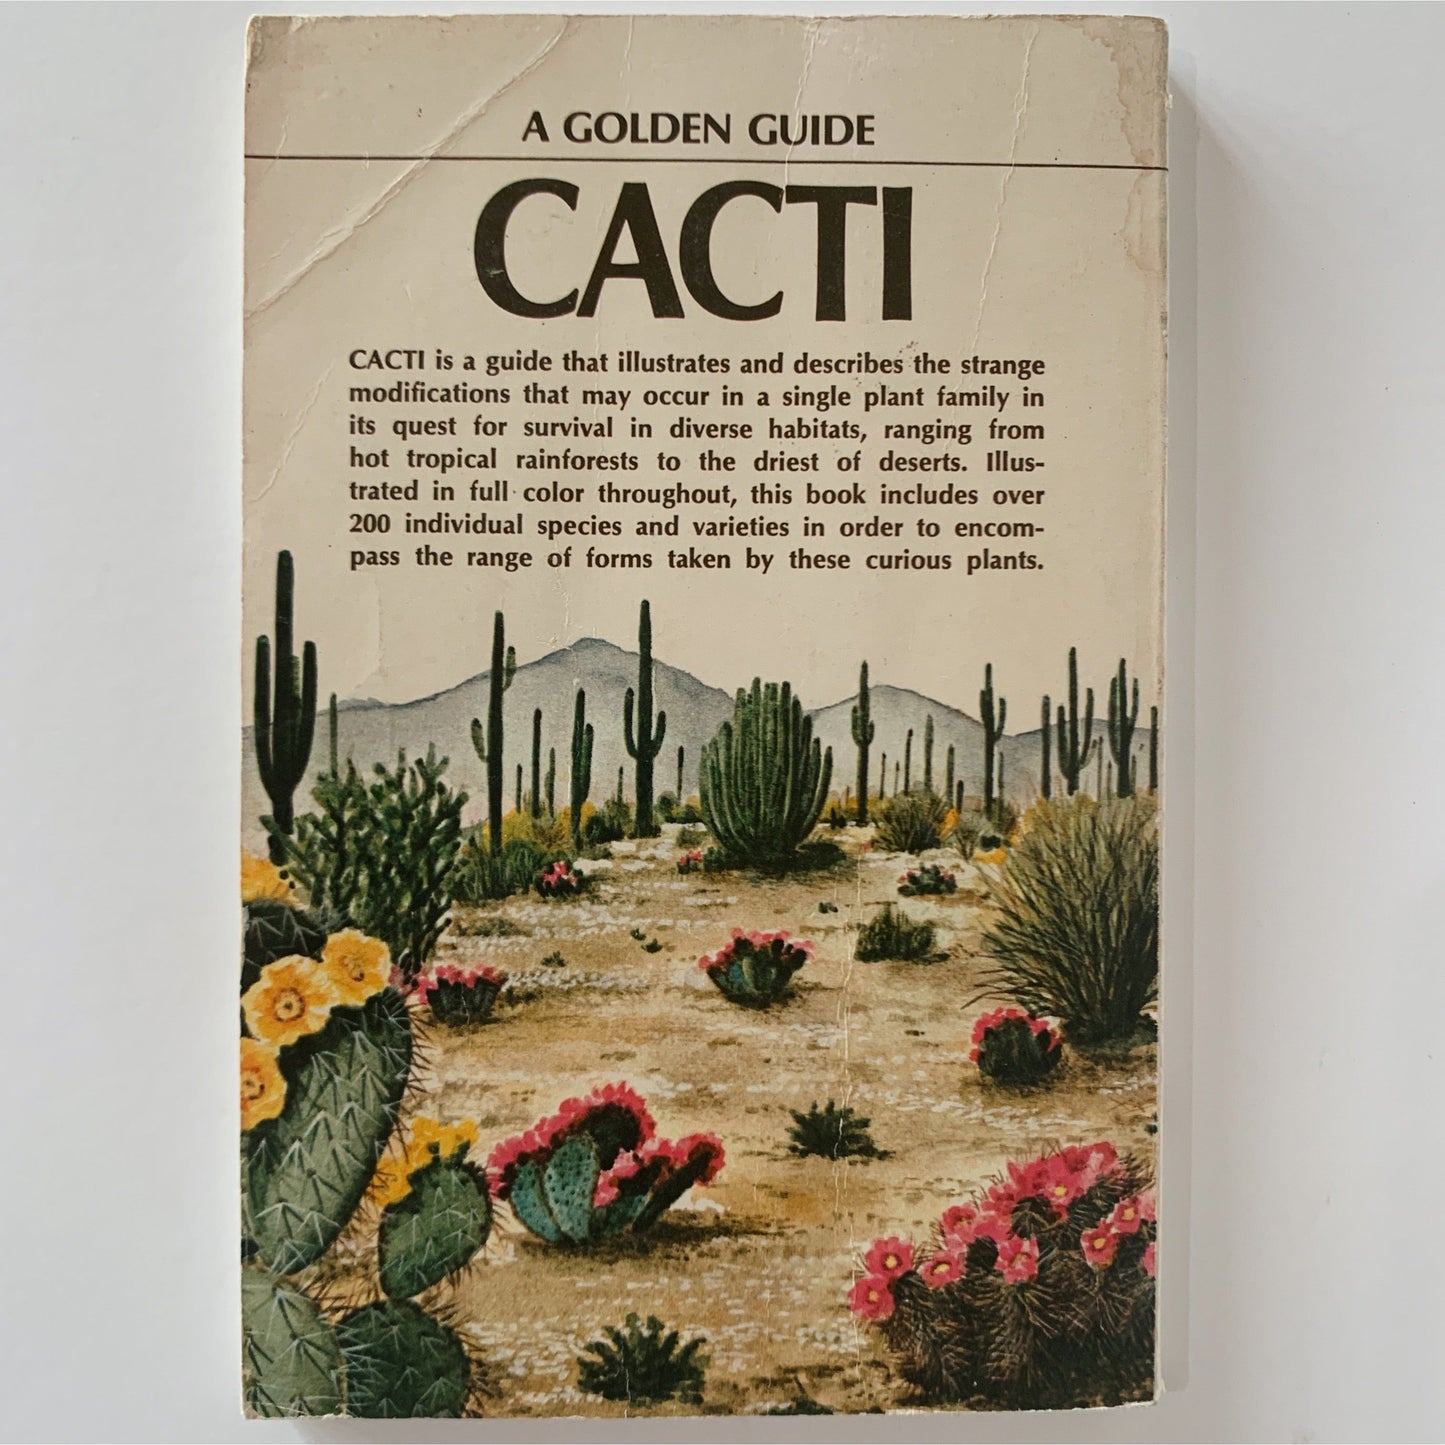 Cacti: A Golden Guide 1974